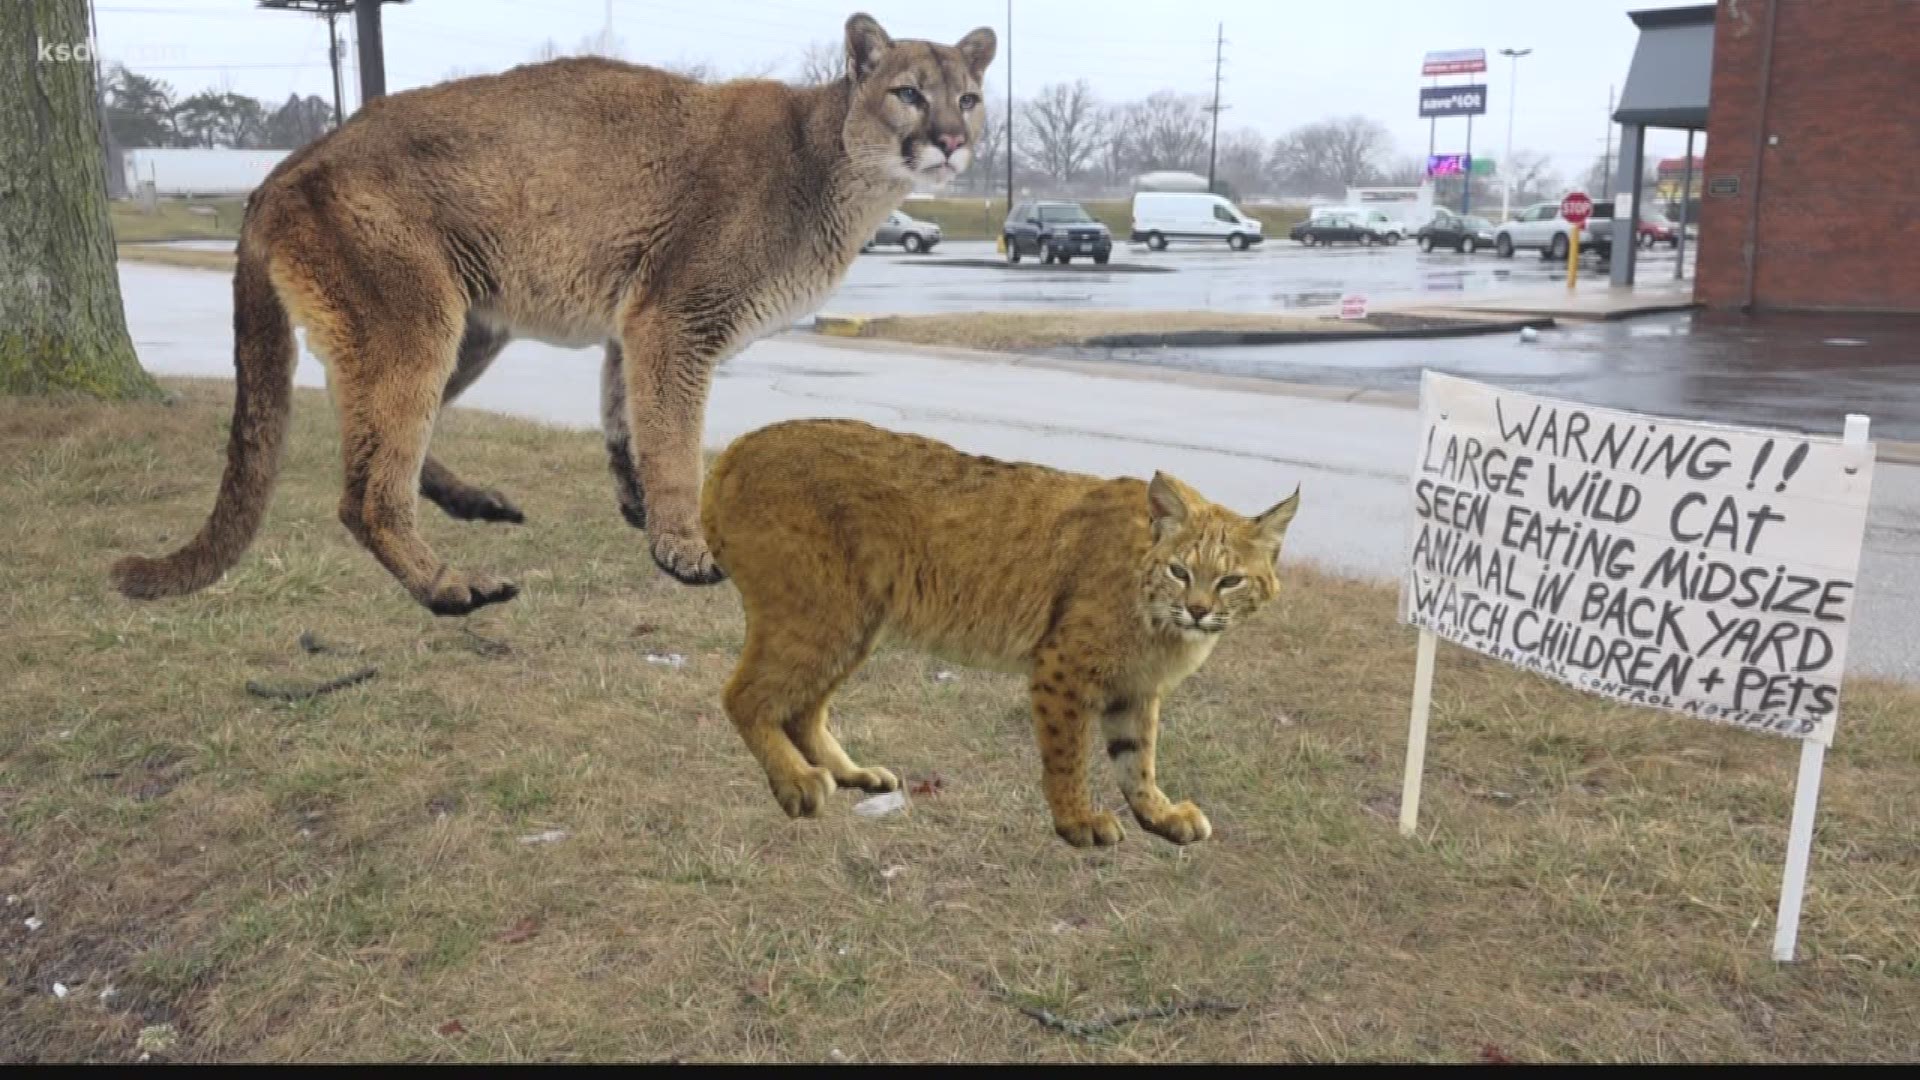 giant wild cats